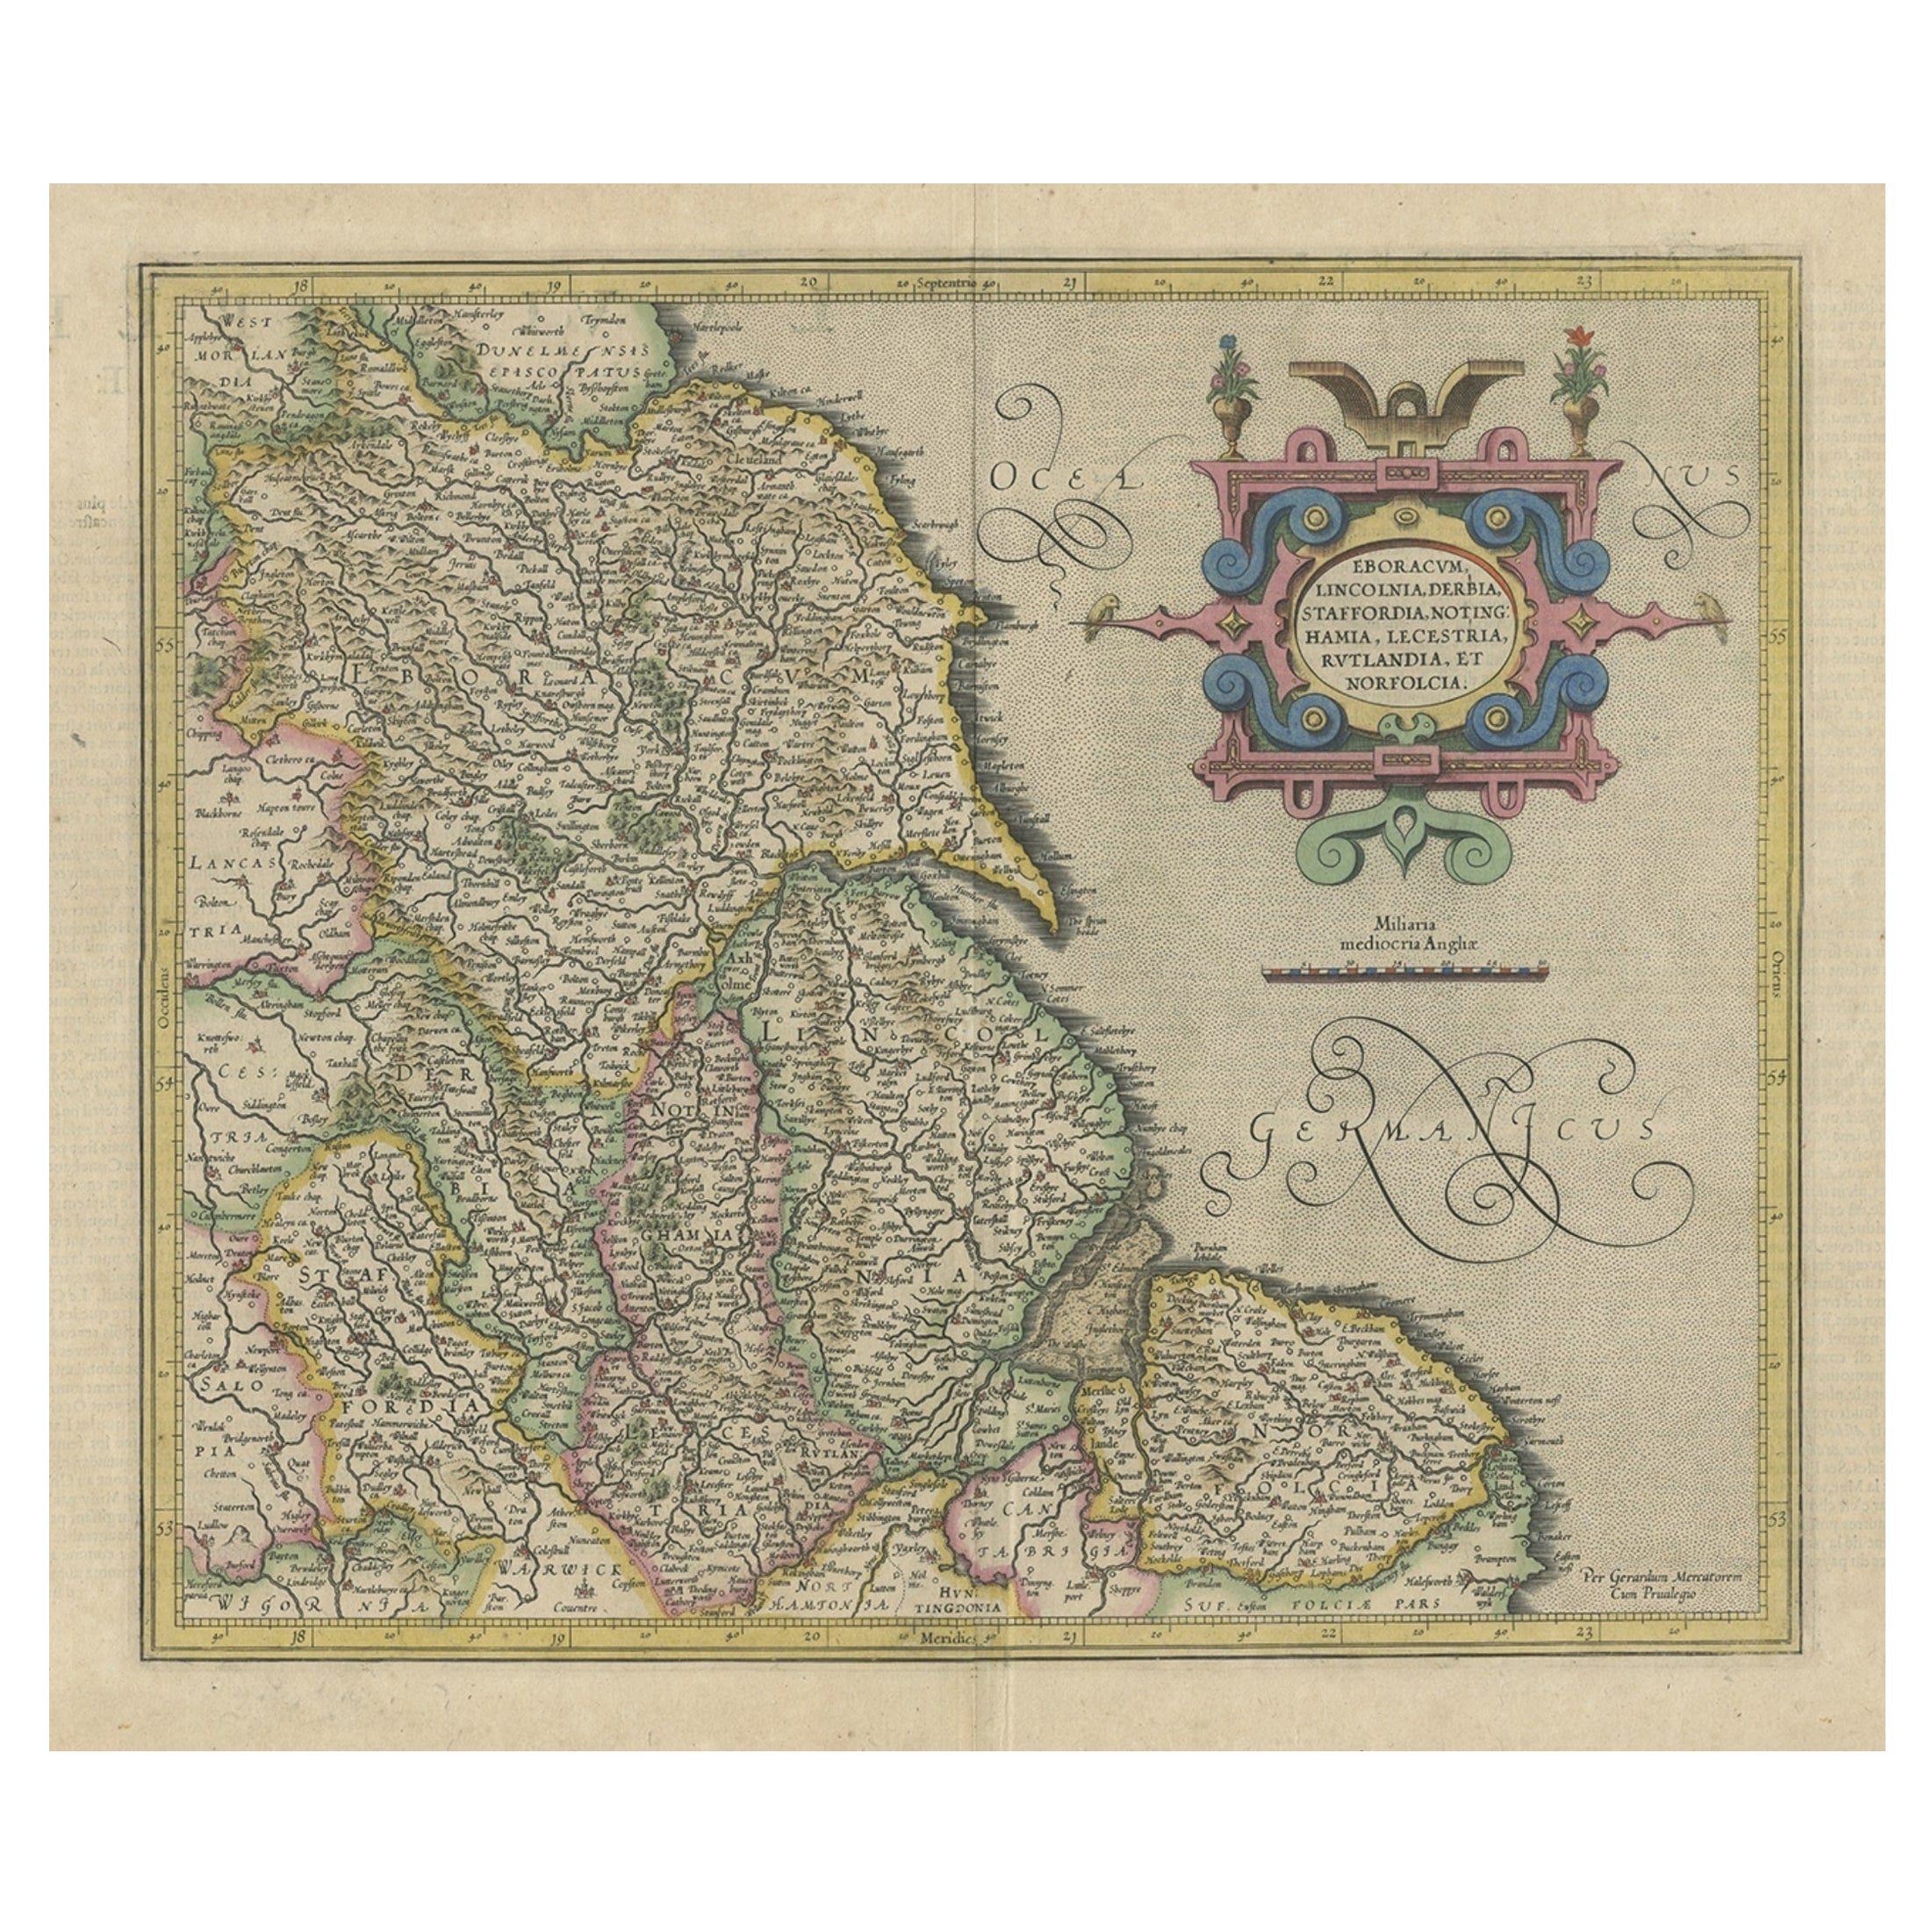 Dekorative frühe handkolorierte Karte des Nordosten Englands, ca. 1620